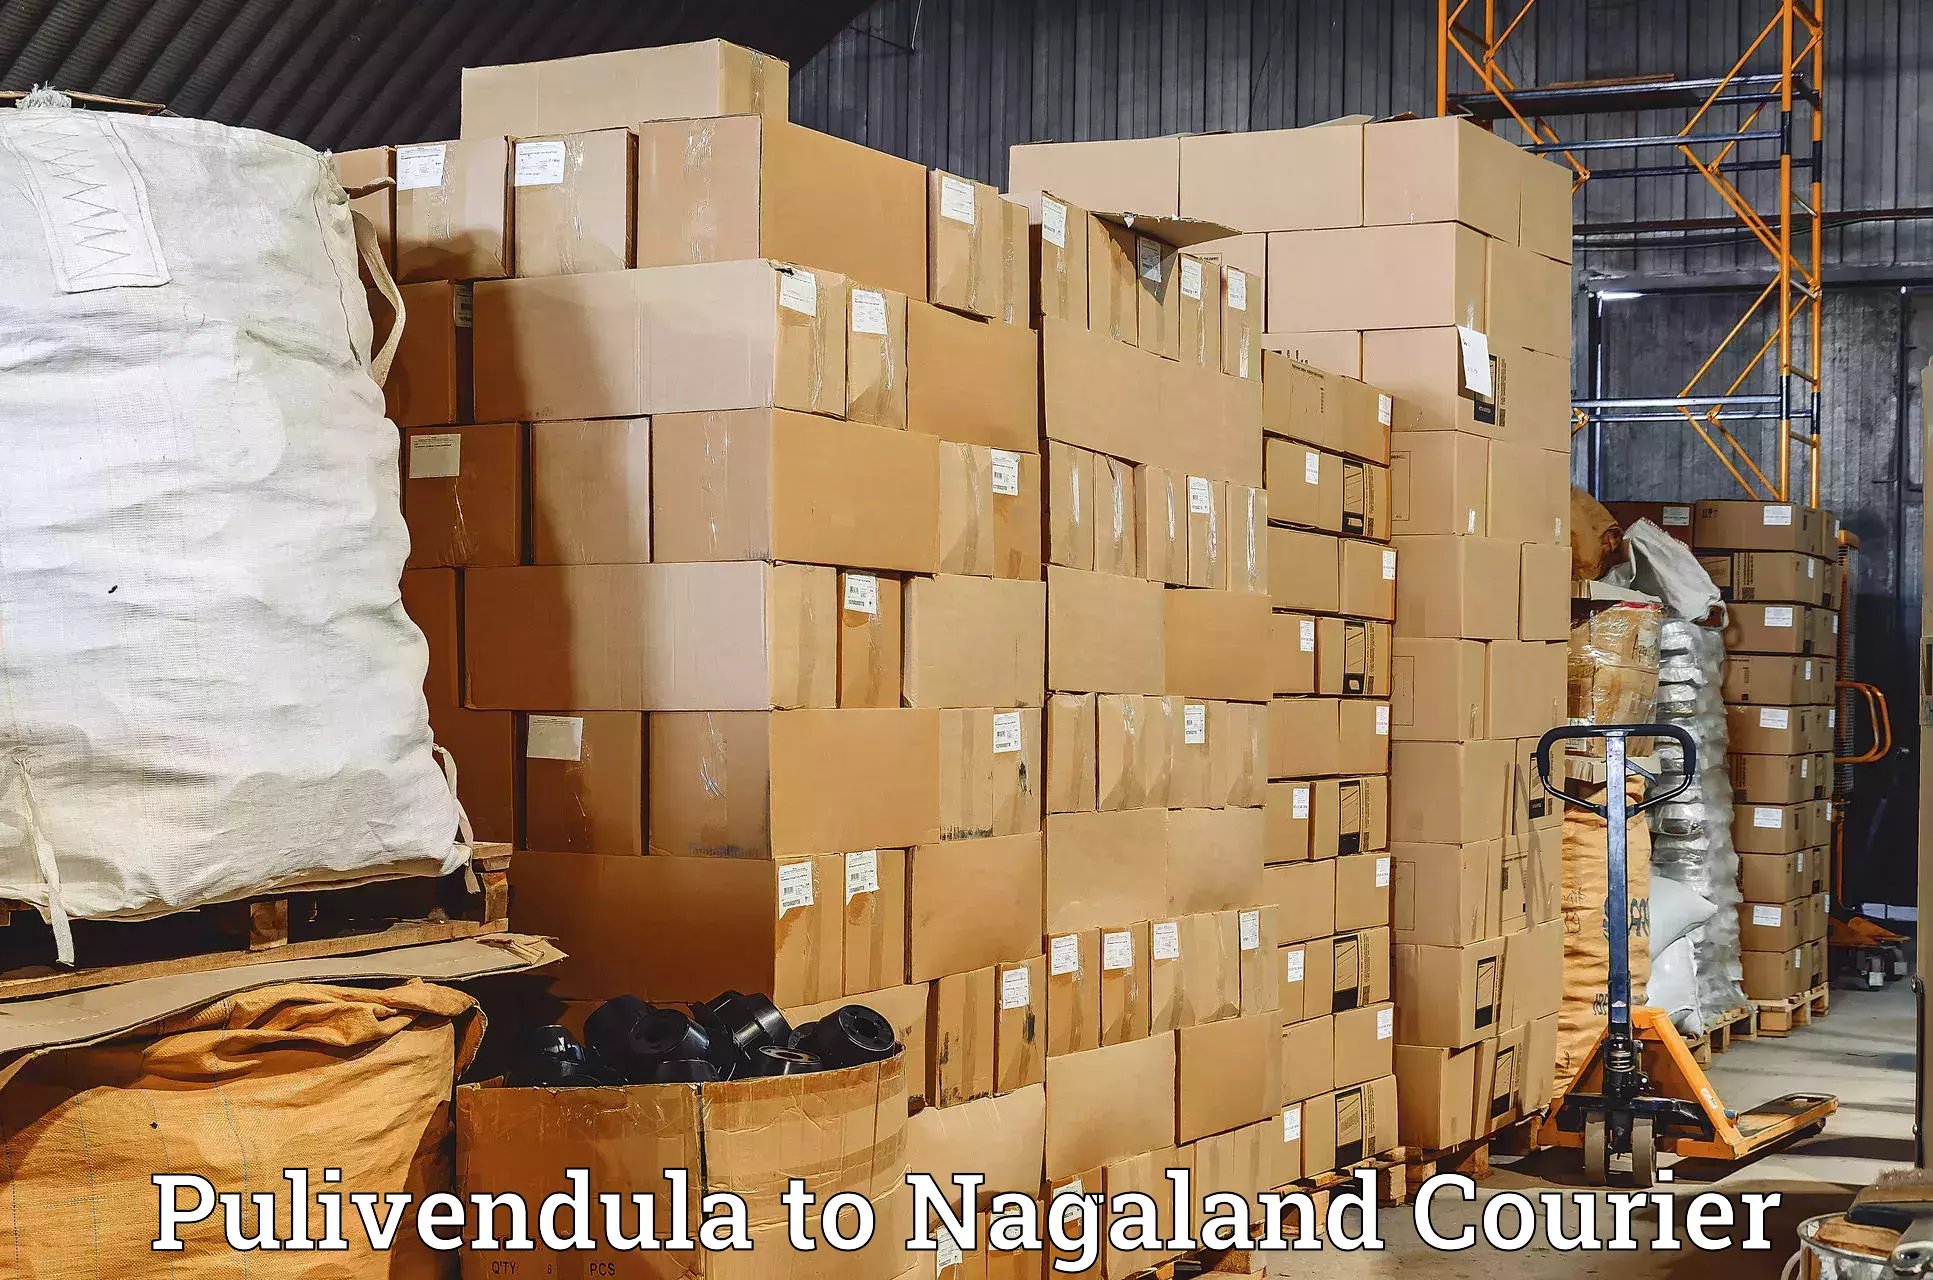 Express mail solutions Pulivendula to Nagaland